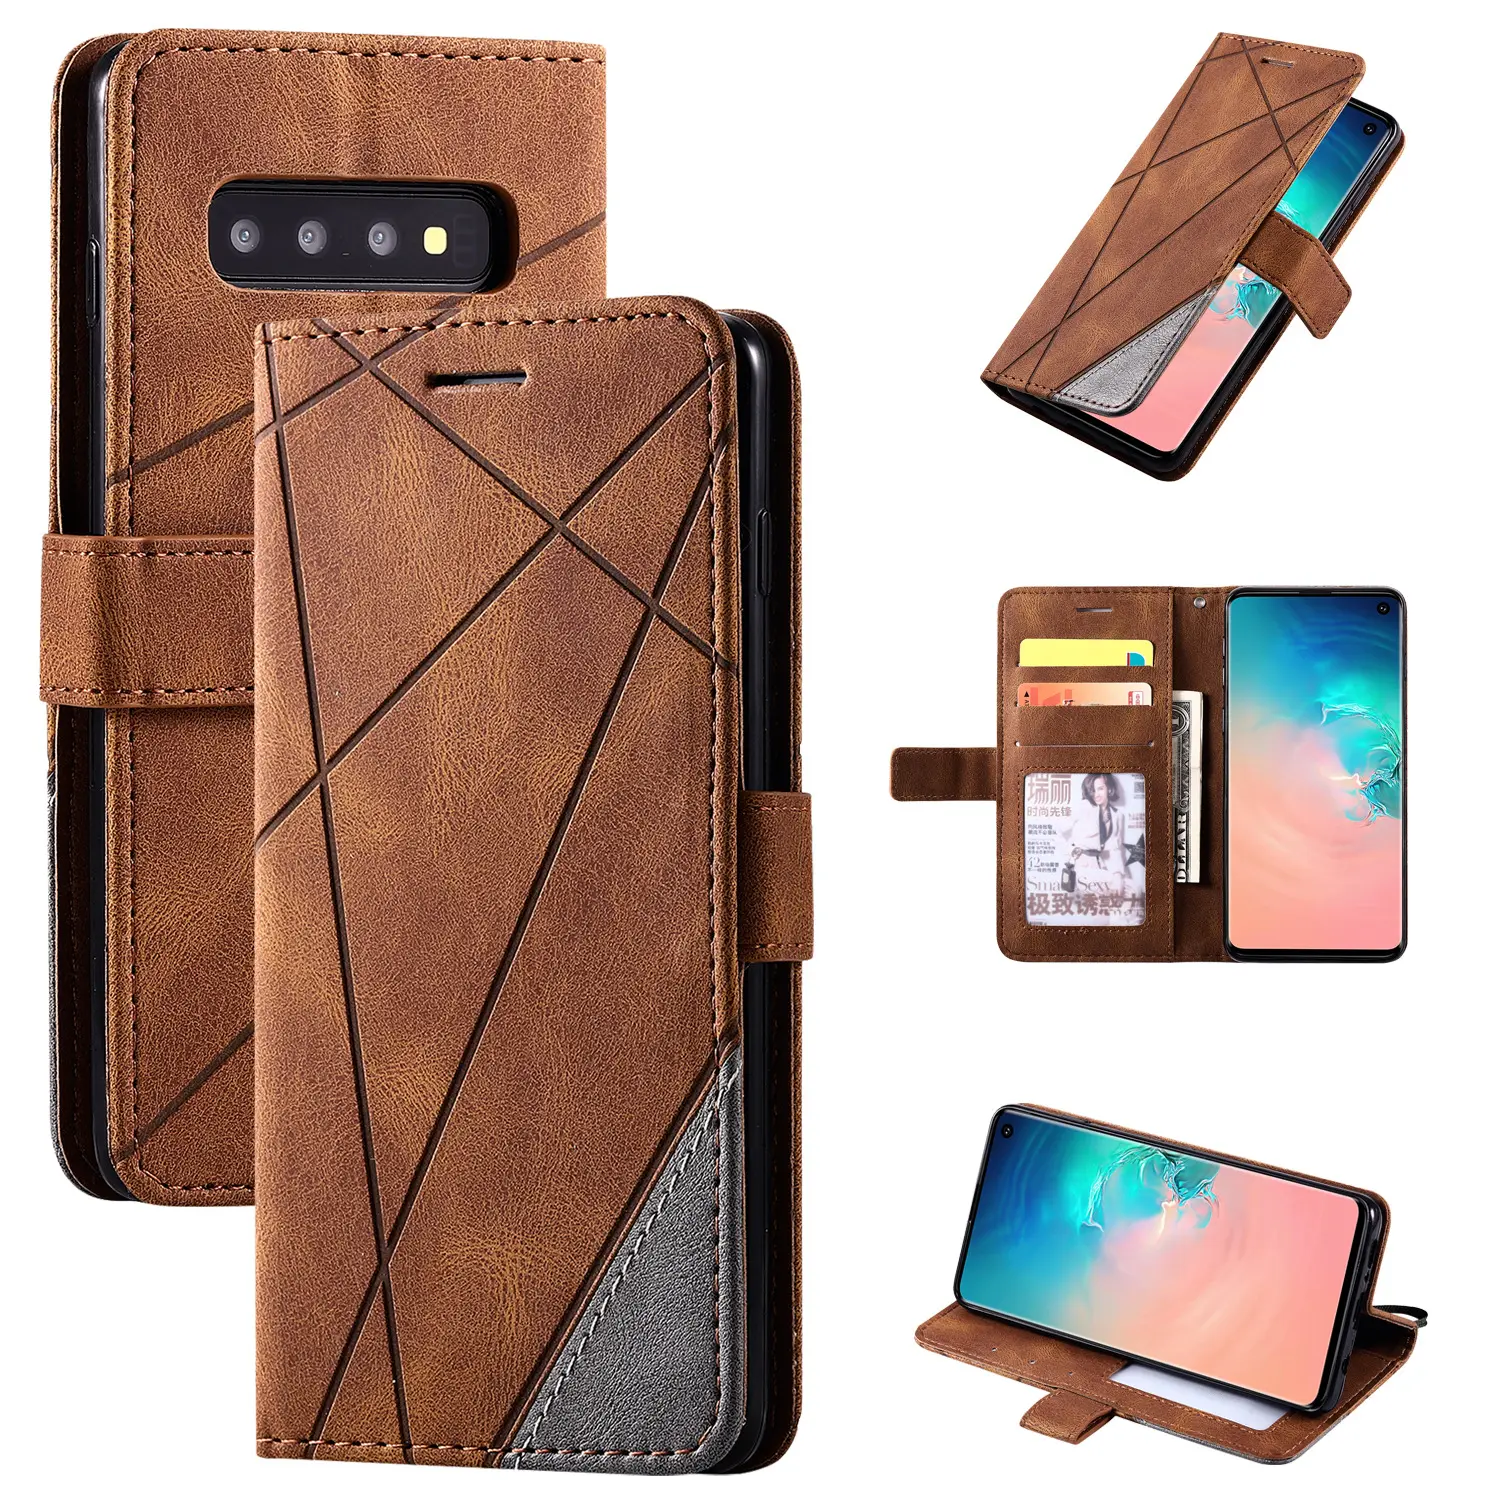 Iphone XS 12 के लिए क्रेडिट वॉलेट केस के साथ लक्जरी स्नेक स्किन शोल्डर बैग पीयू लेदर स्मार्टफोन बैक केस कवर